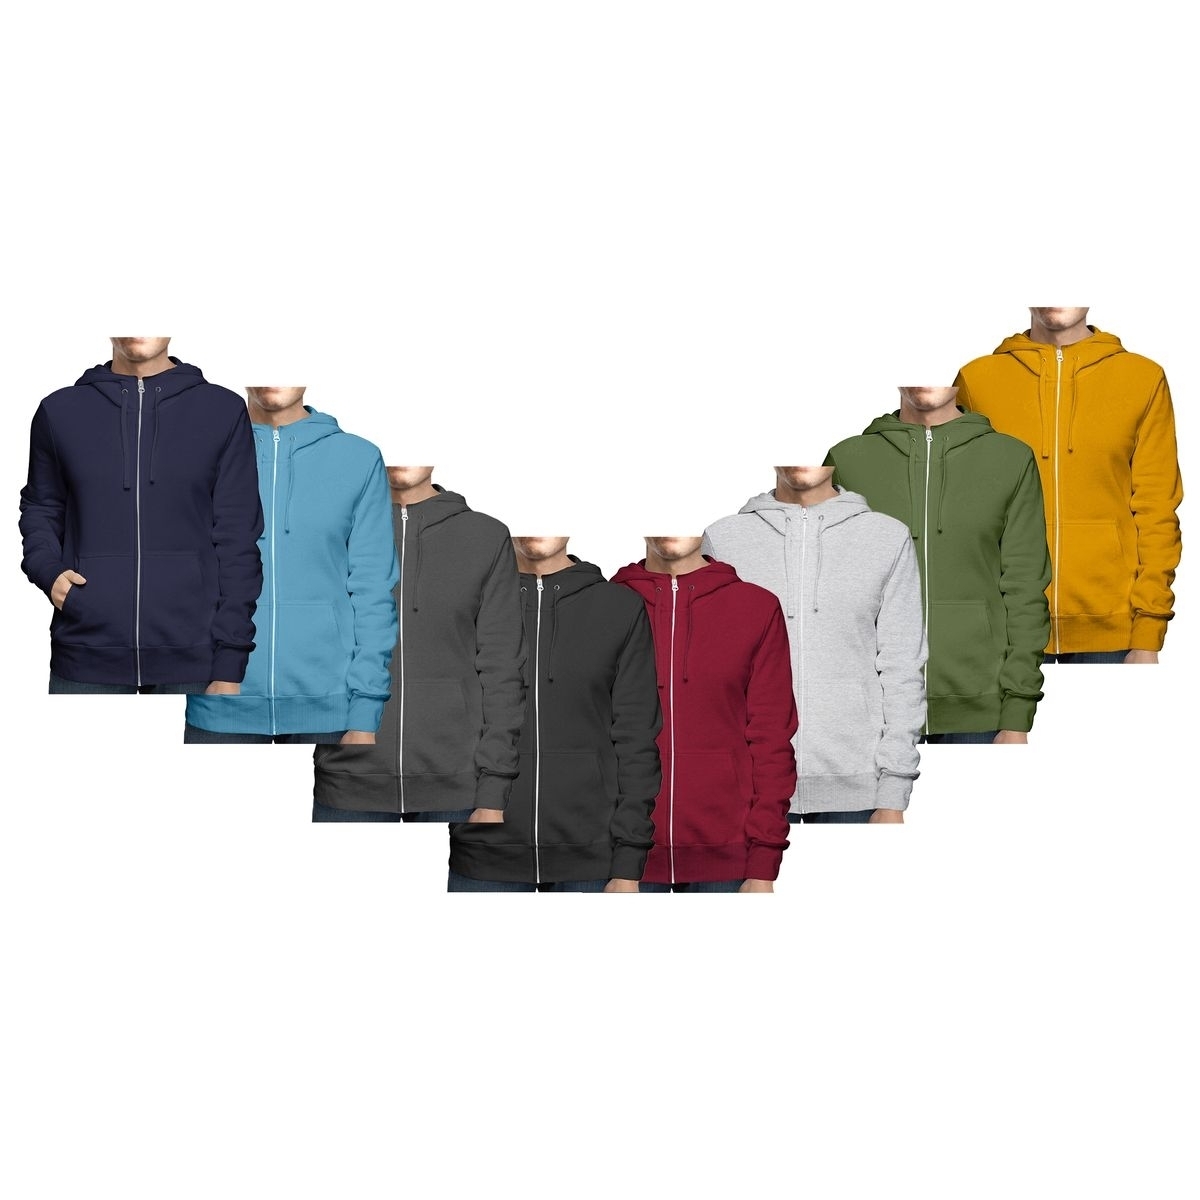 Men's Big & Tall Winter Warm Soft Cozy Full Zip-Up Fleece Lined Hoodie Sweatshirt - Black, Large